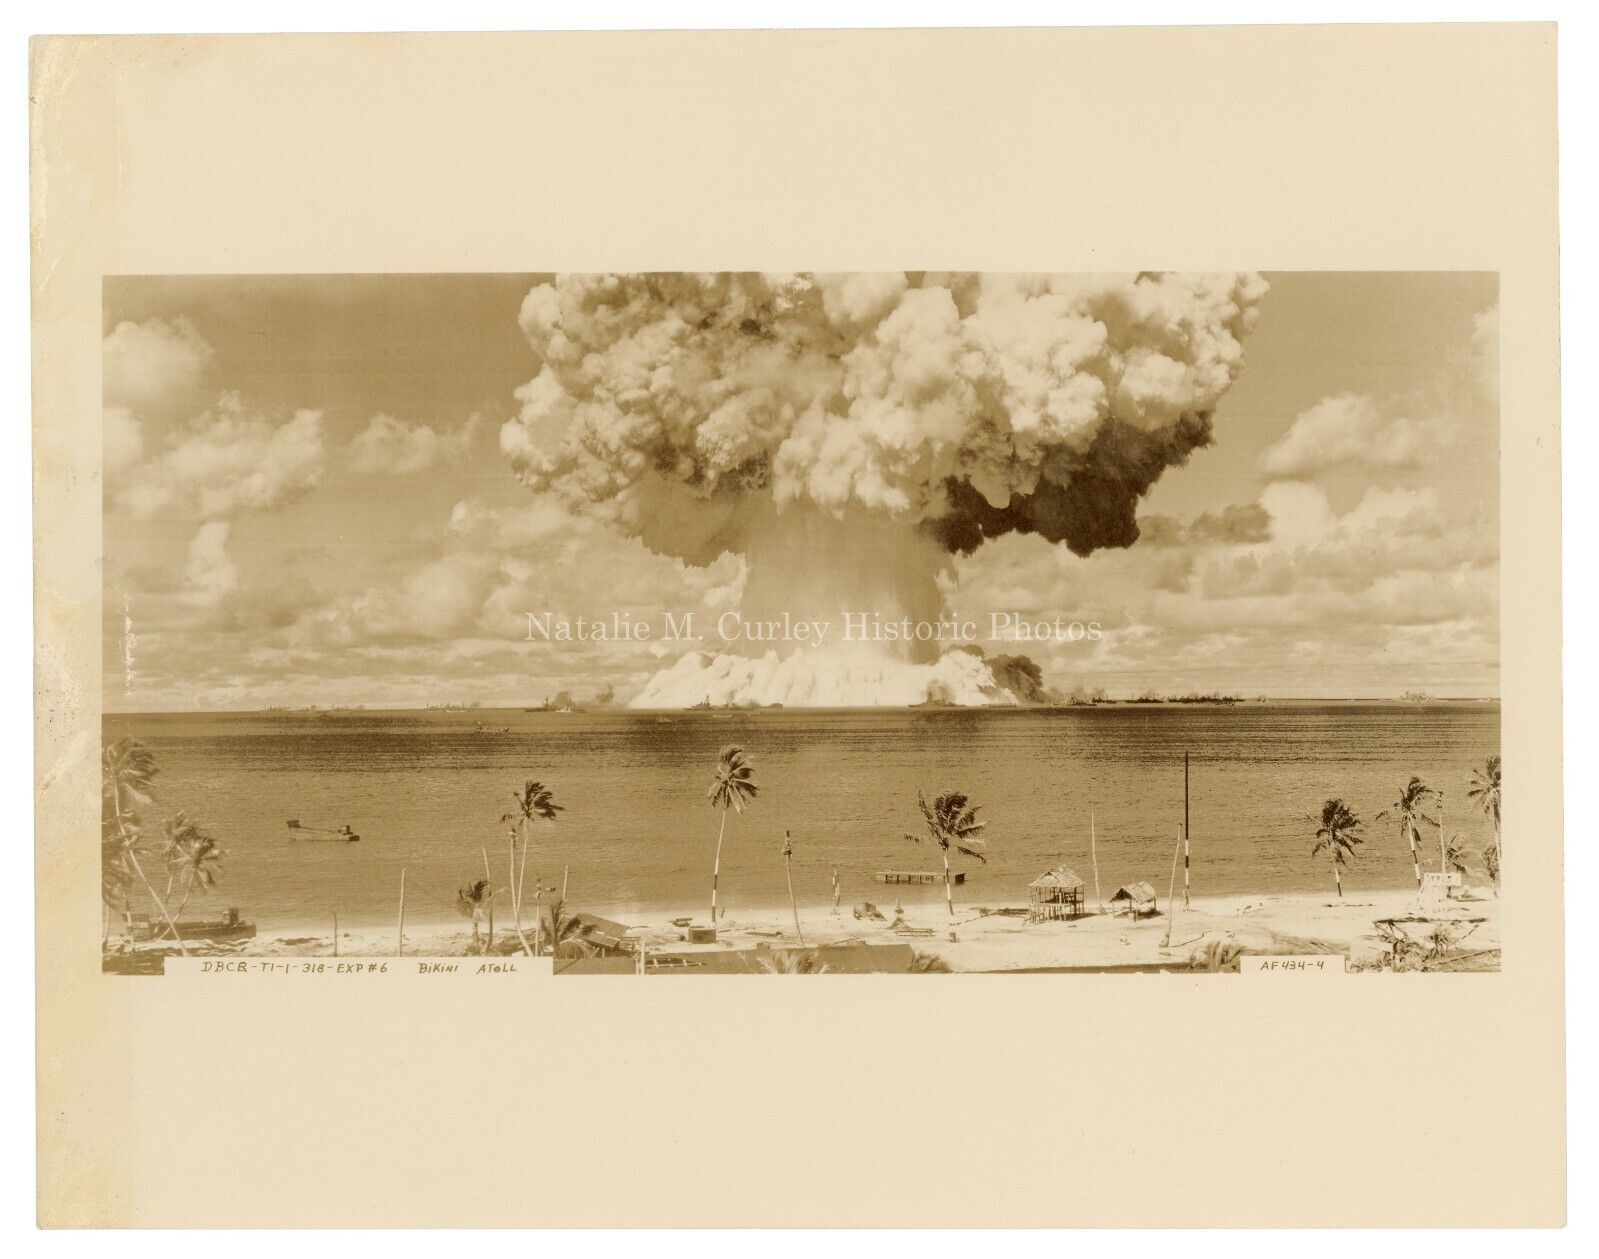 1940s Nuclear Bomb Bikini Atoll Mushroom Cloud Press Photo